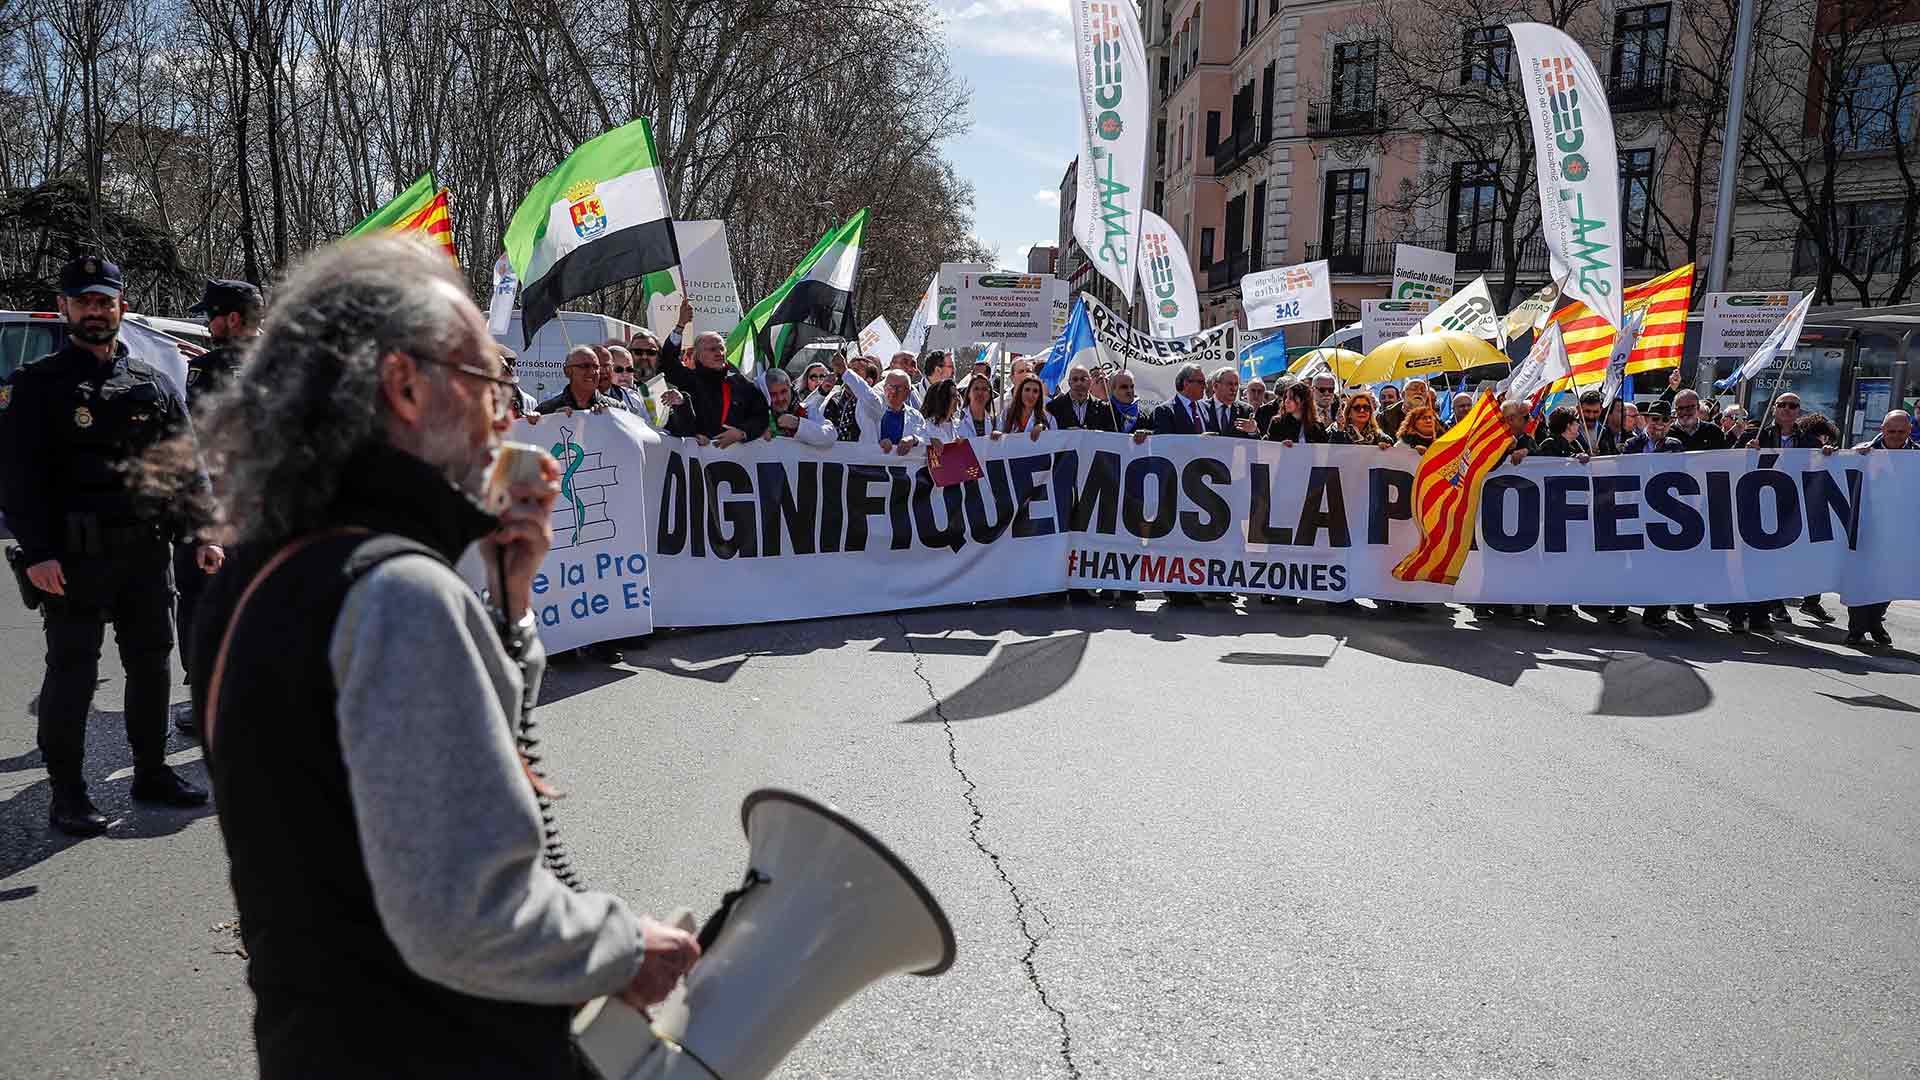 Médicos de toda España se manifiestan en Madrid para pedir la “dignificación” de su profesión